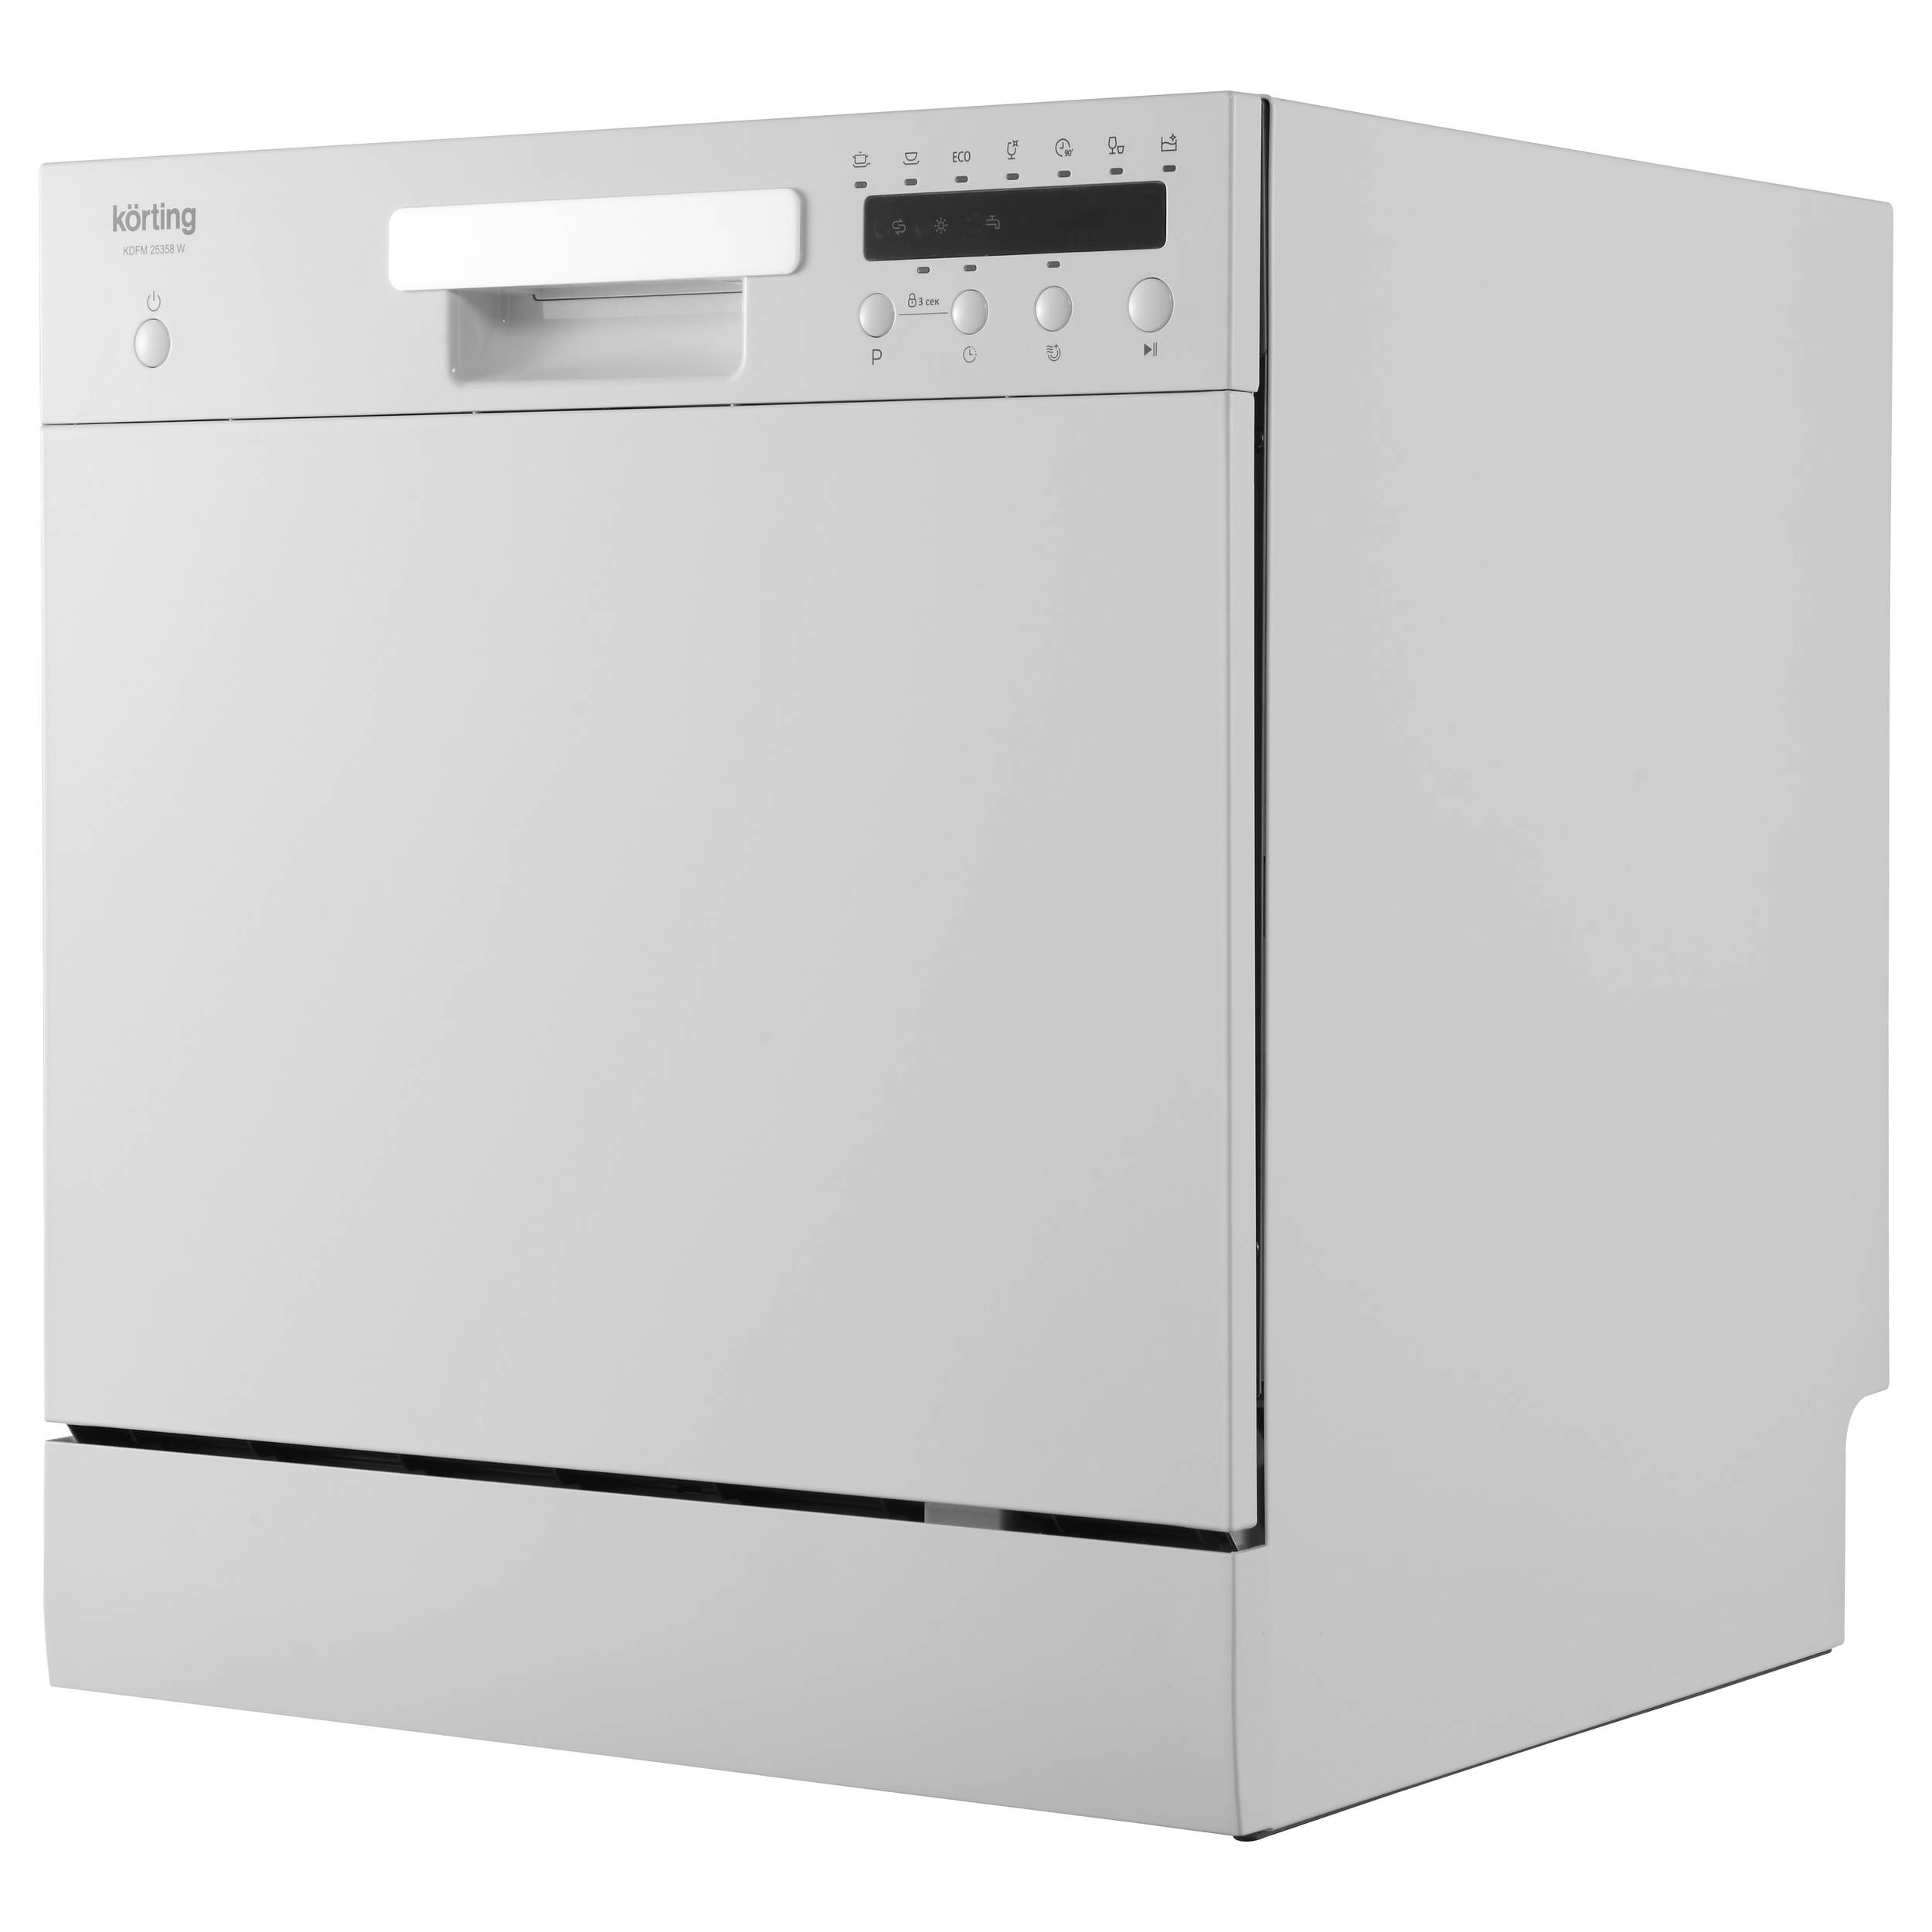 Посудомоечная машина Korting KDFM 25358 W белый посудомоечная машина korting kdf 45240 n